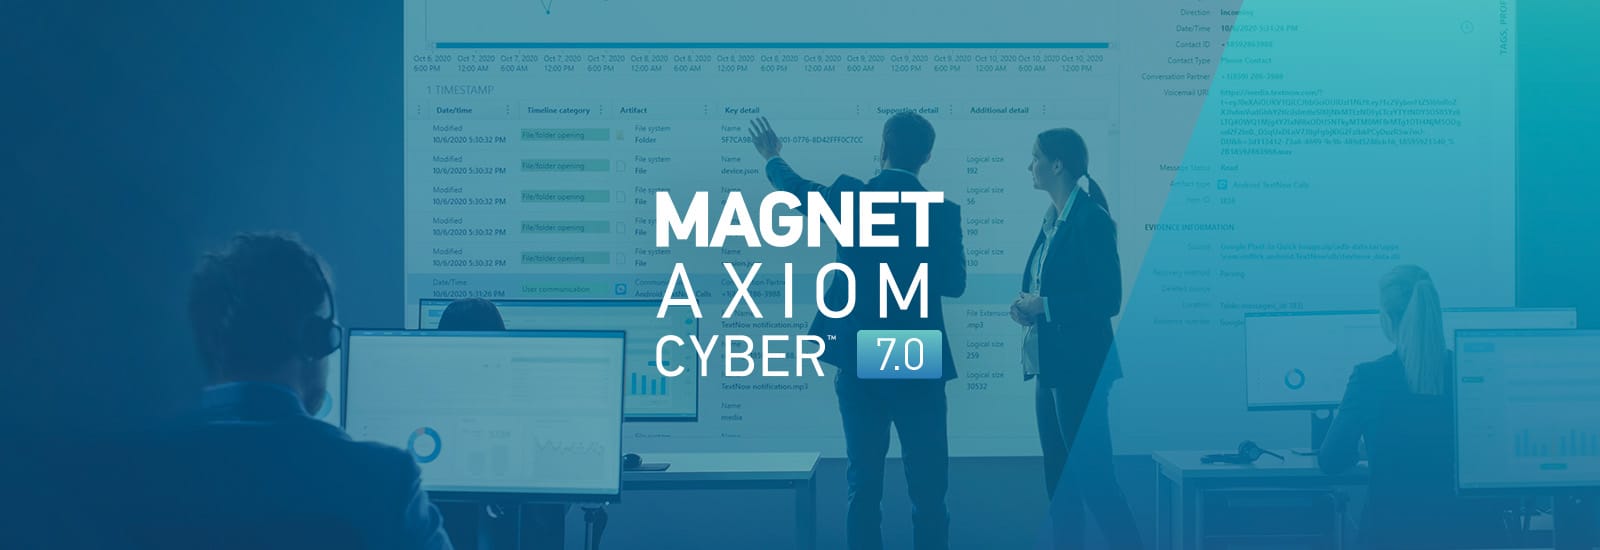 Magnet AXIOM Cyber 7.0